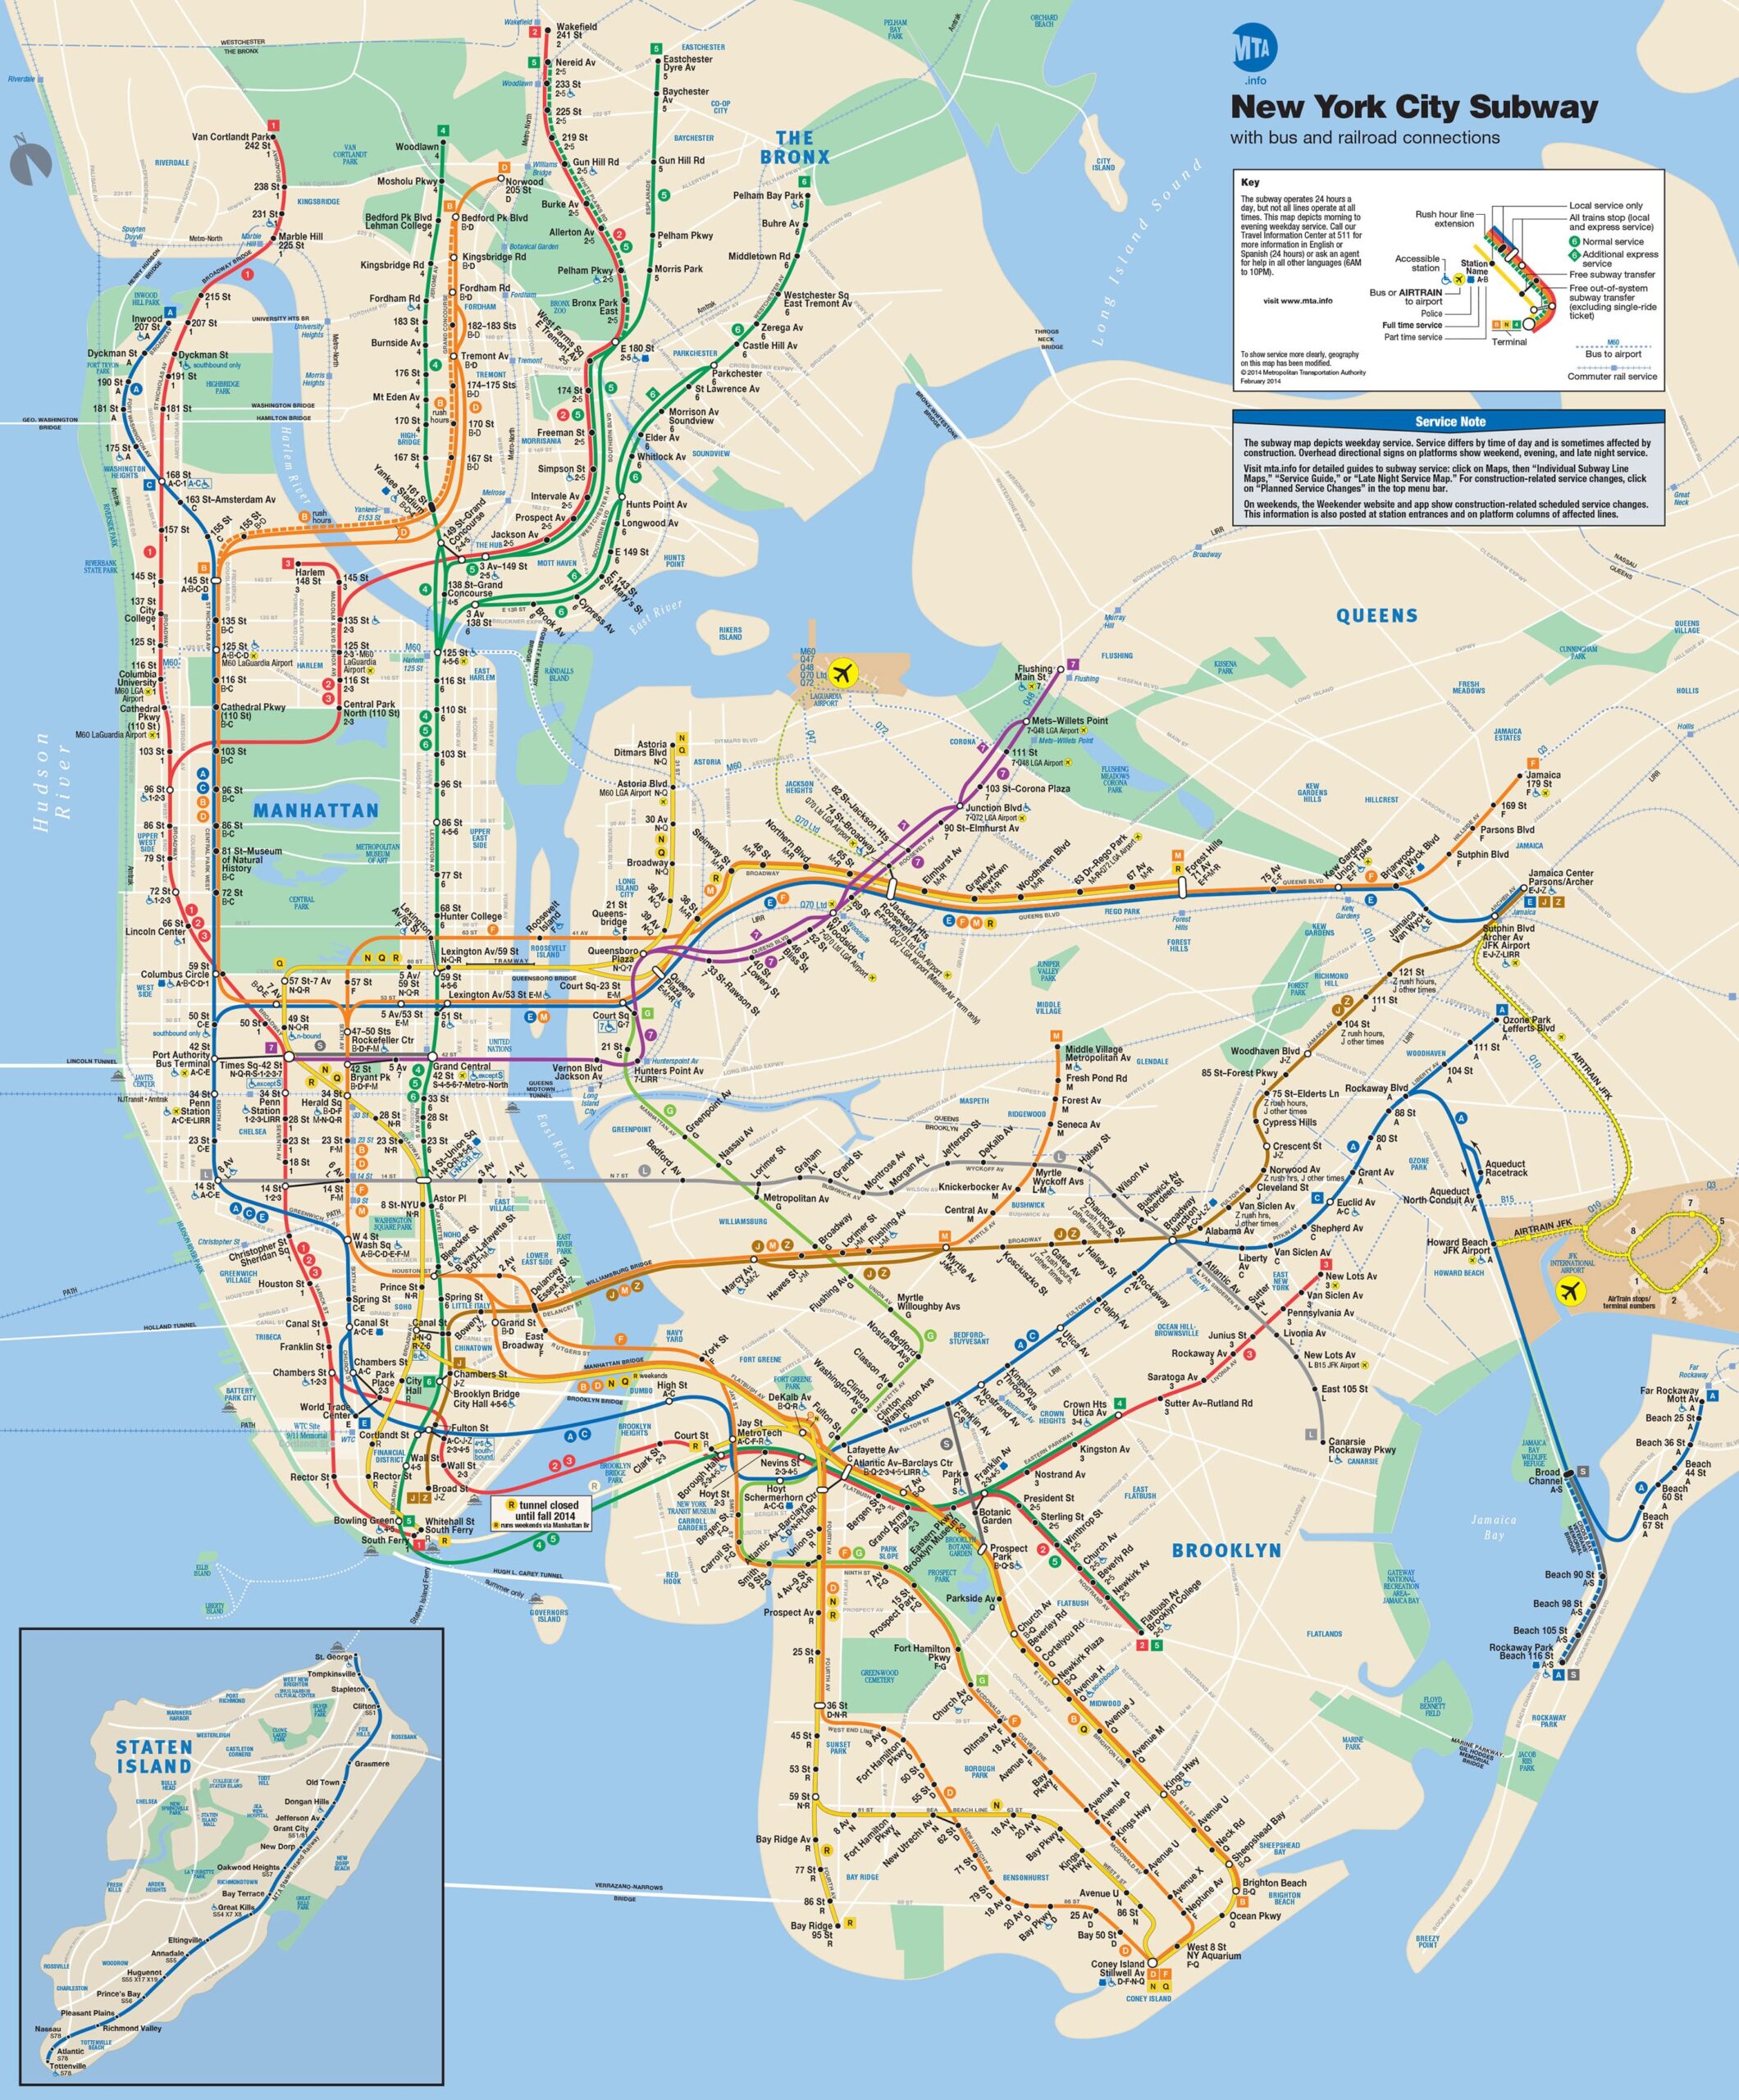 Mappa e pianta della metropolitana di New York